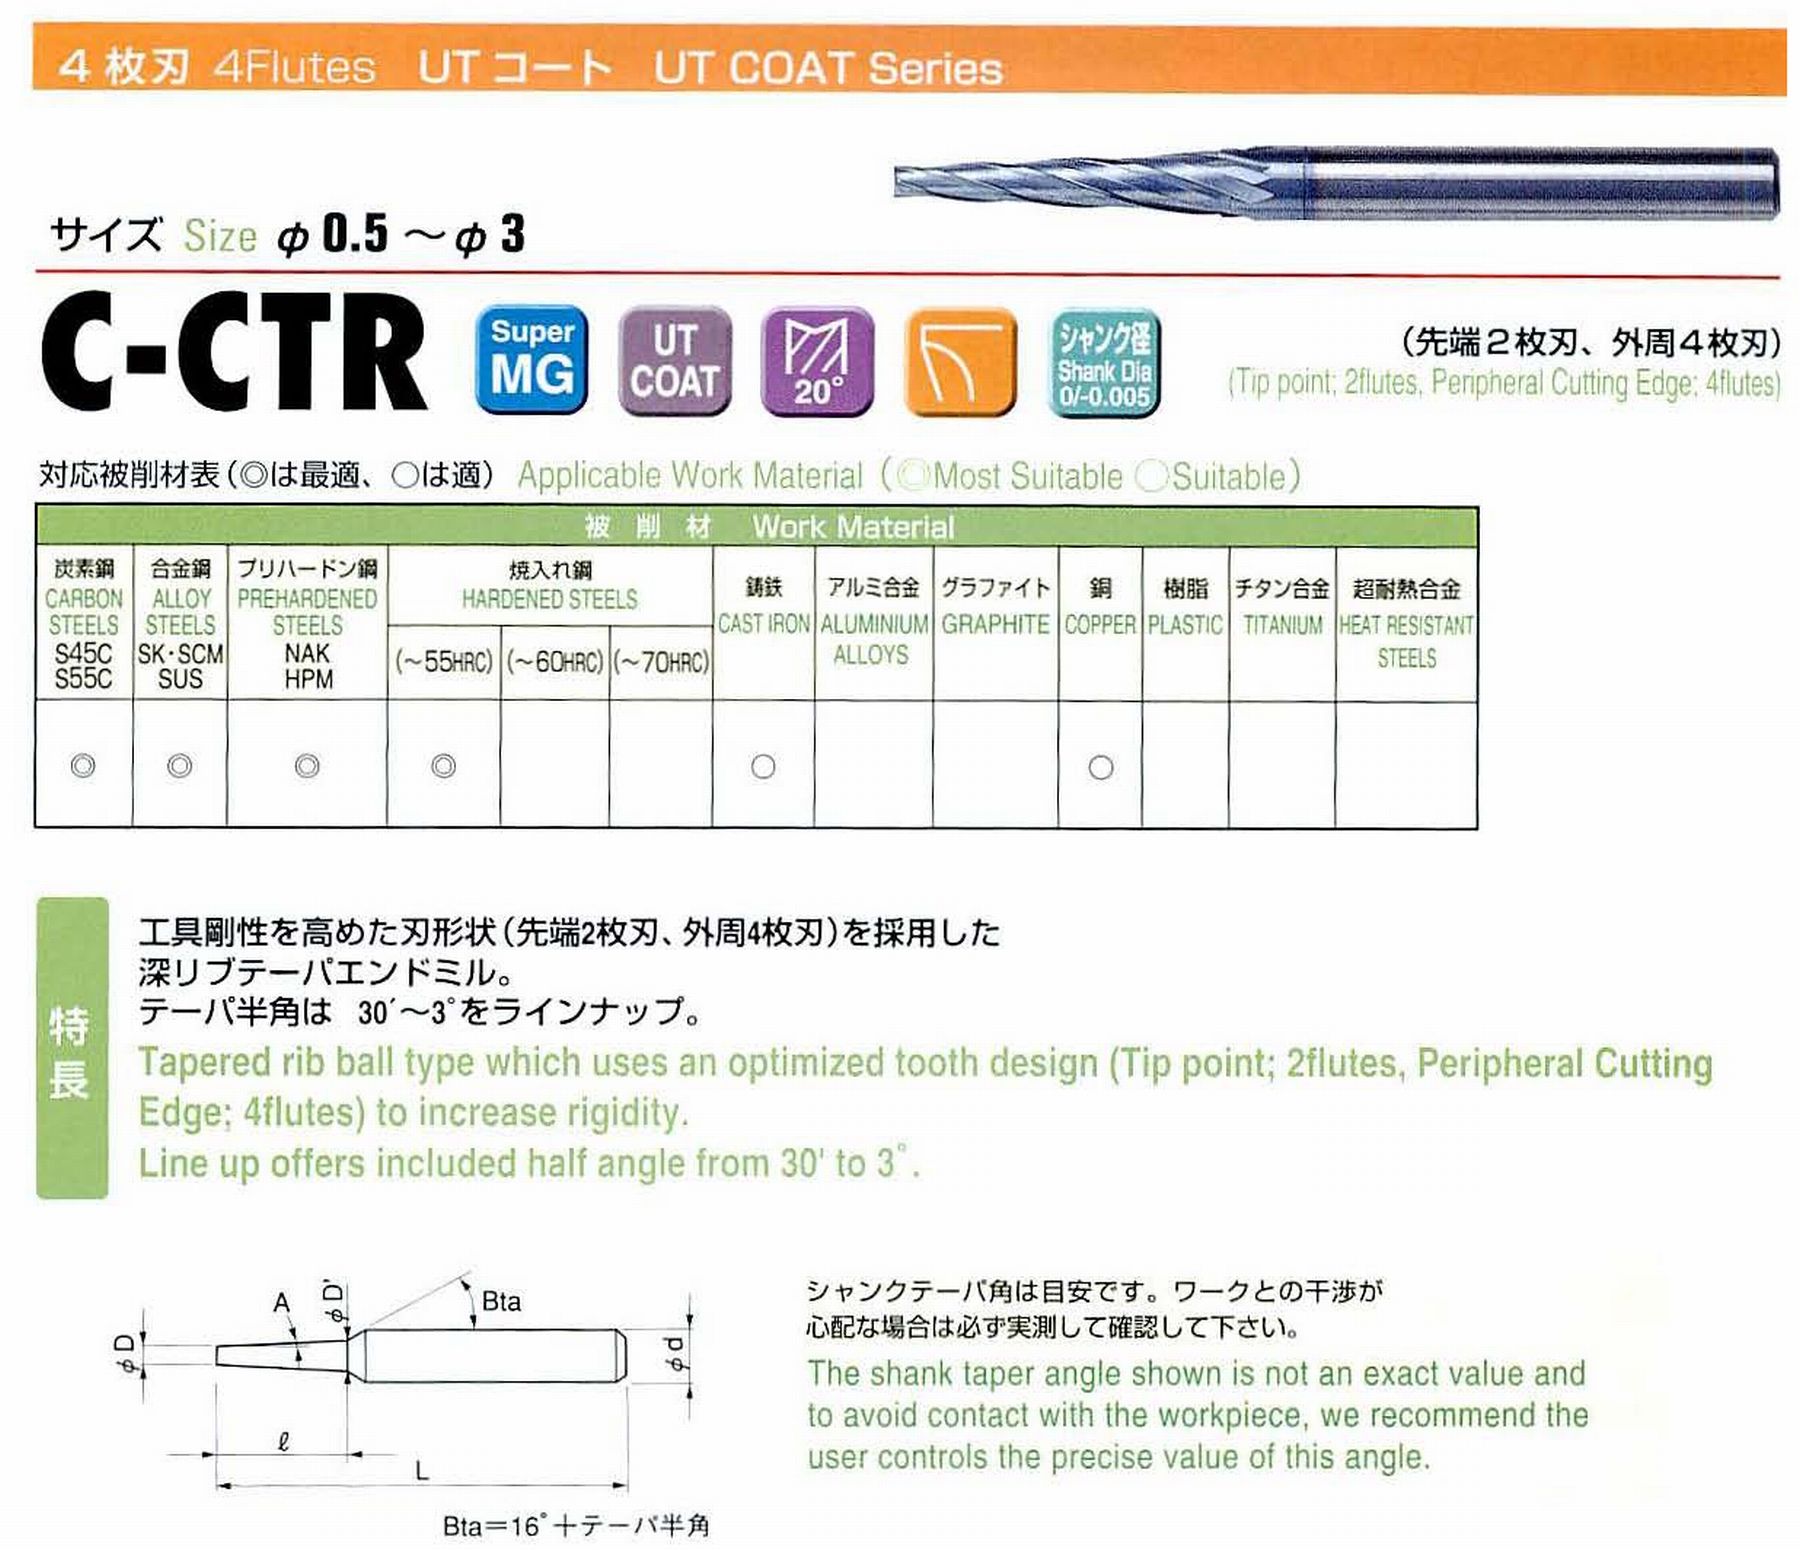 ユニオンツール 4枚刃 C-CTR4015-16-1.5 先端径1.5 テーパ半角45′ 刃長16 大端径1.92 全長55 シャンク径4